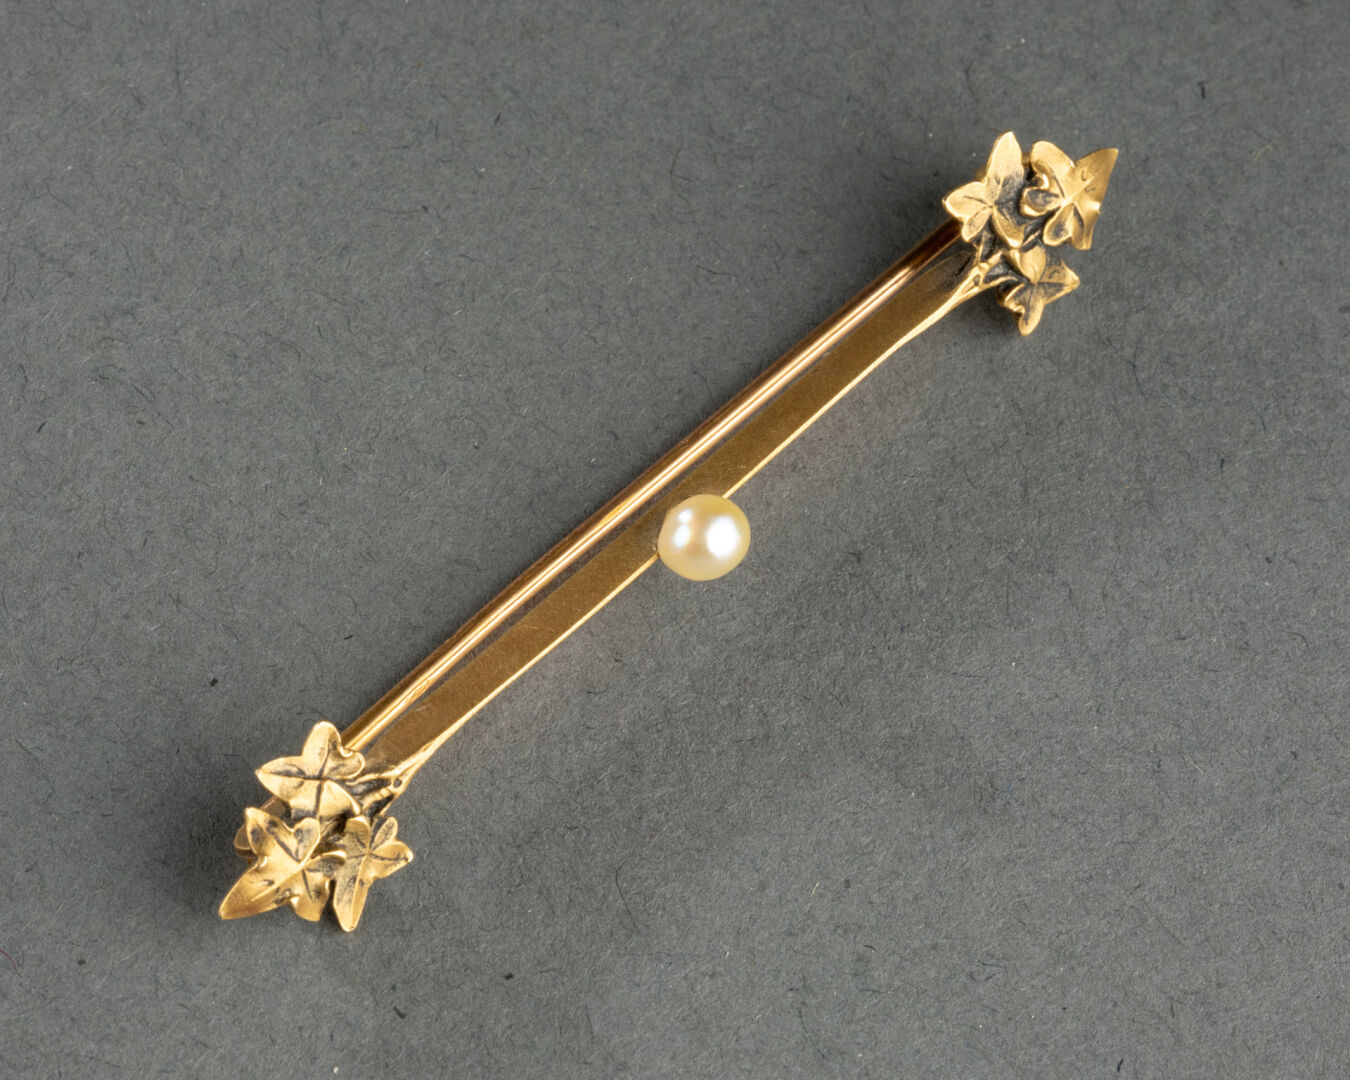 BROCHE barrette à motifs de feuillages Elle est centrée d'une perle de culture Métal doré L. 6 cm - Image 2 of 4